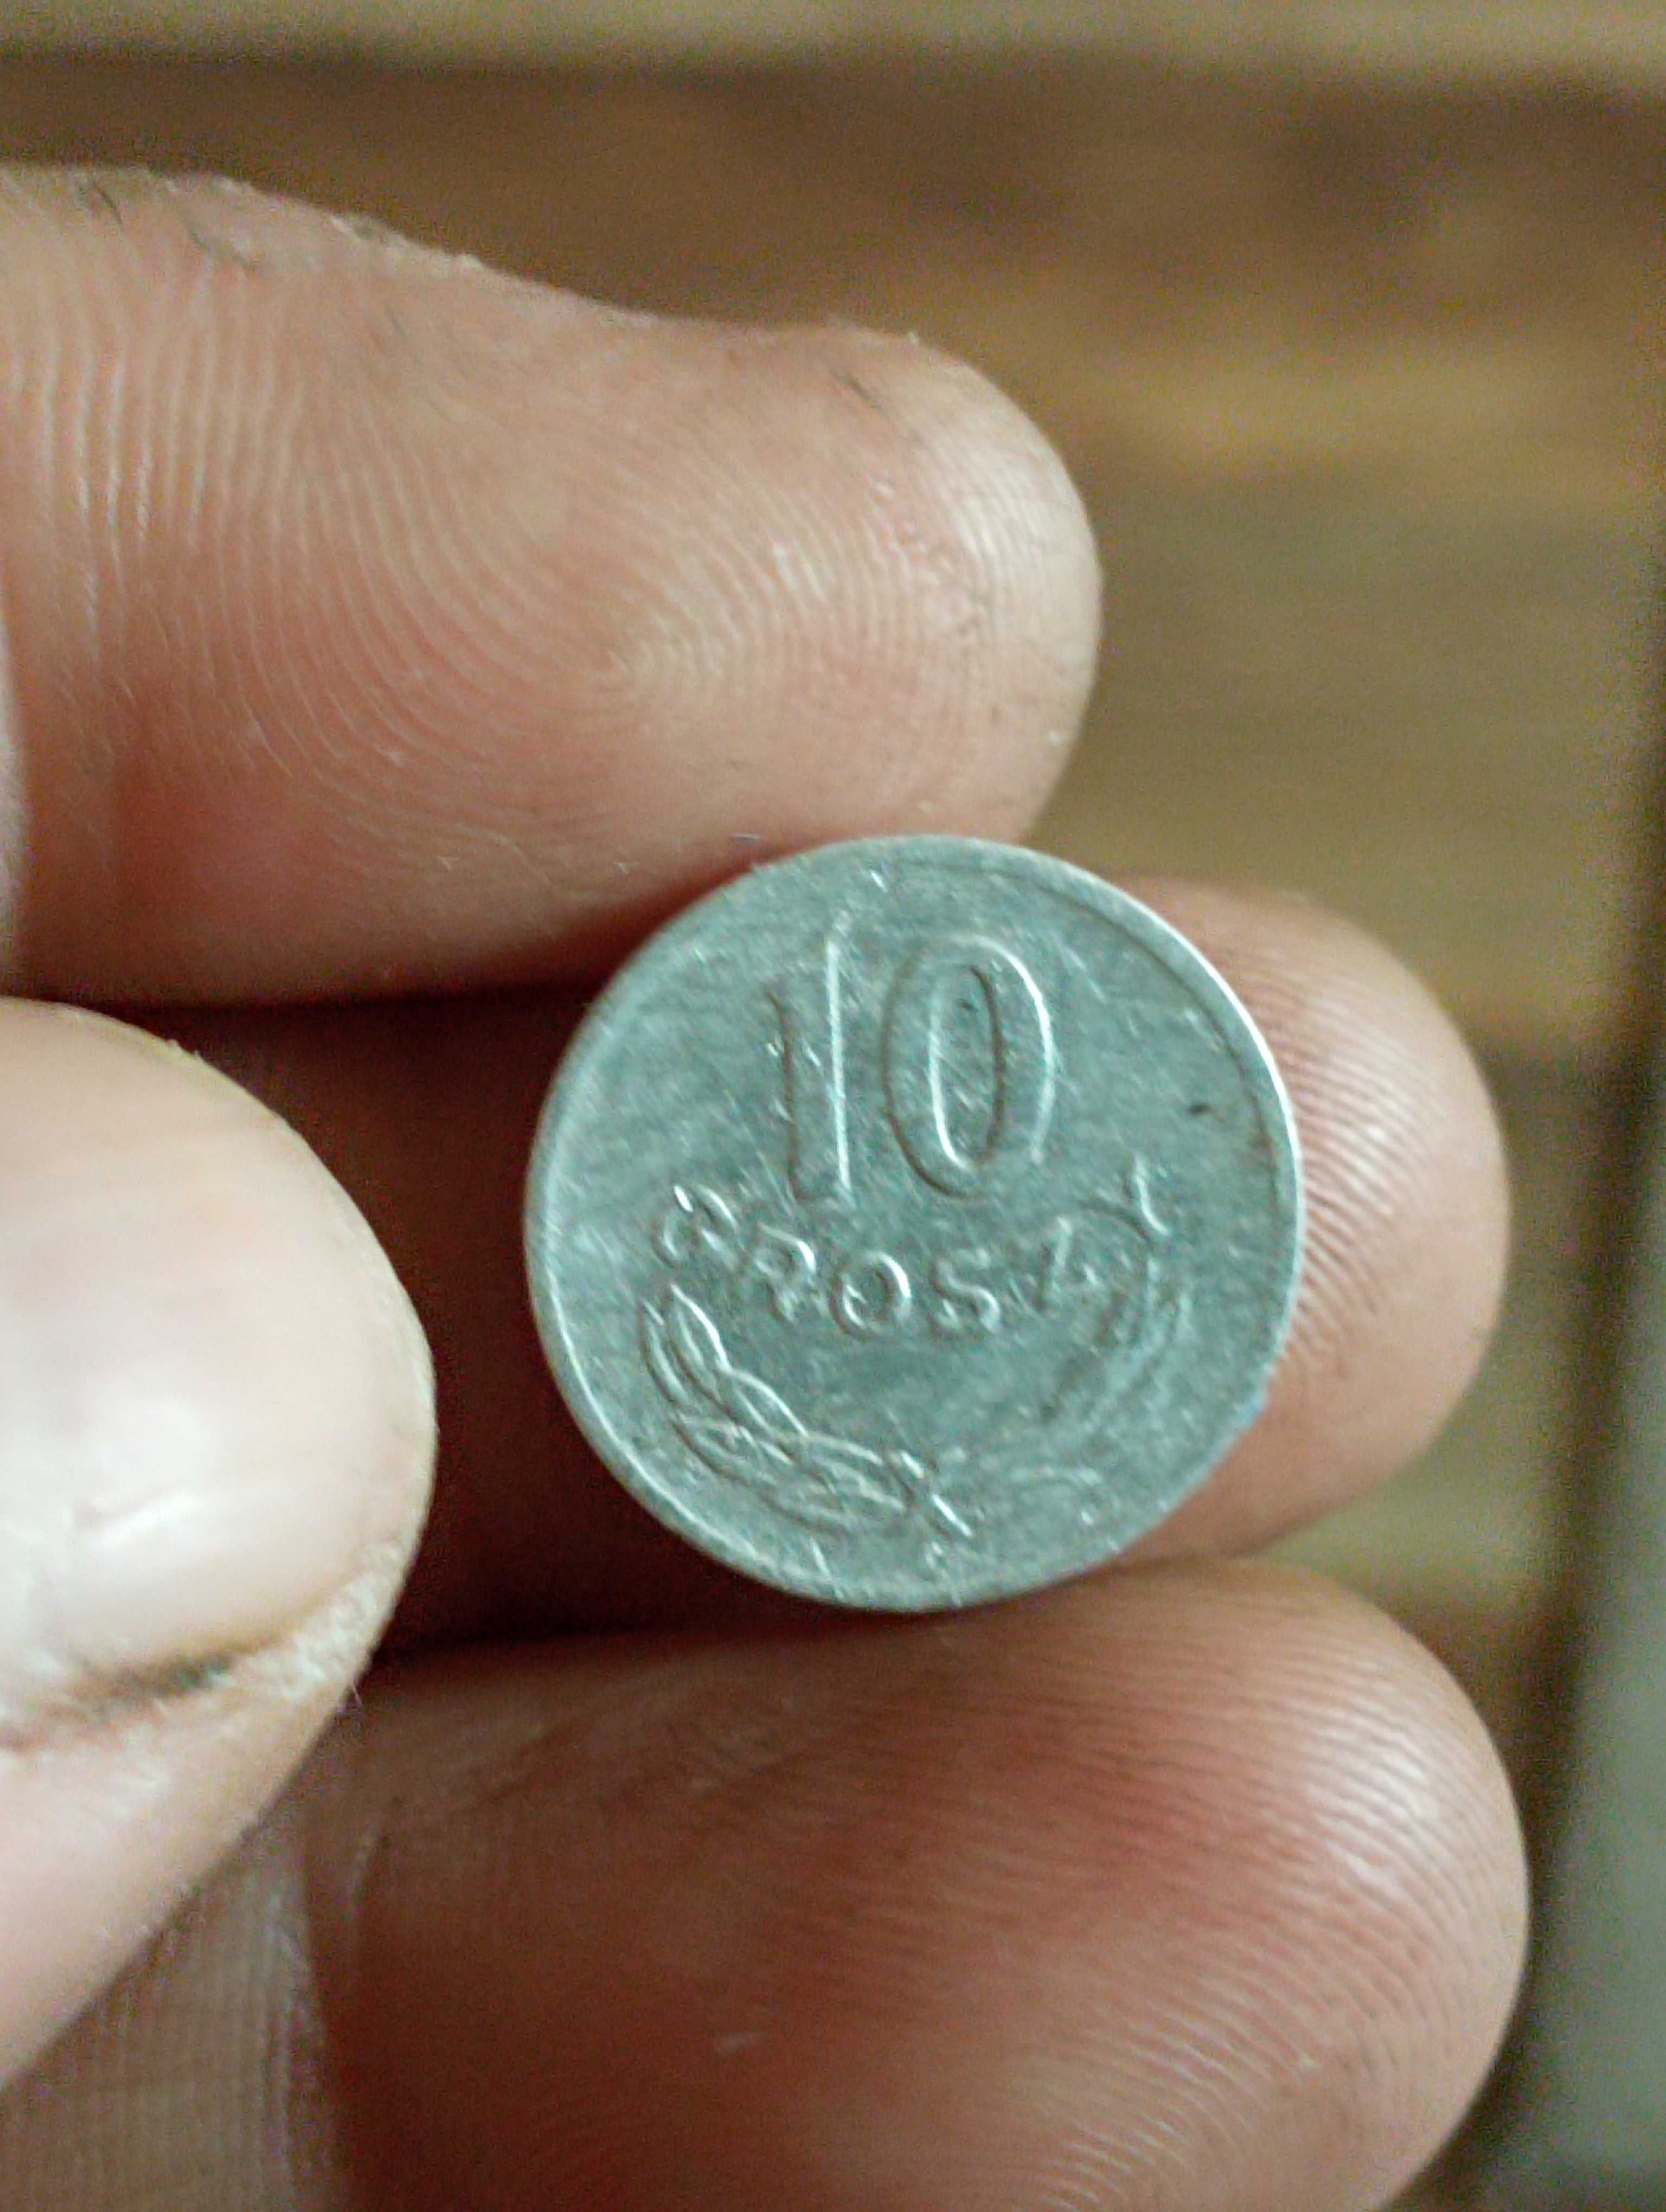 Sprzedam monete 10 groszy 1949 rok